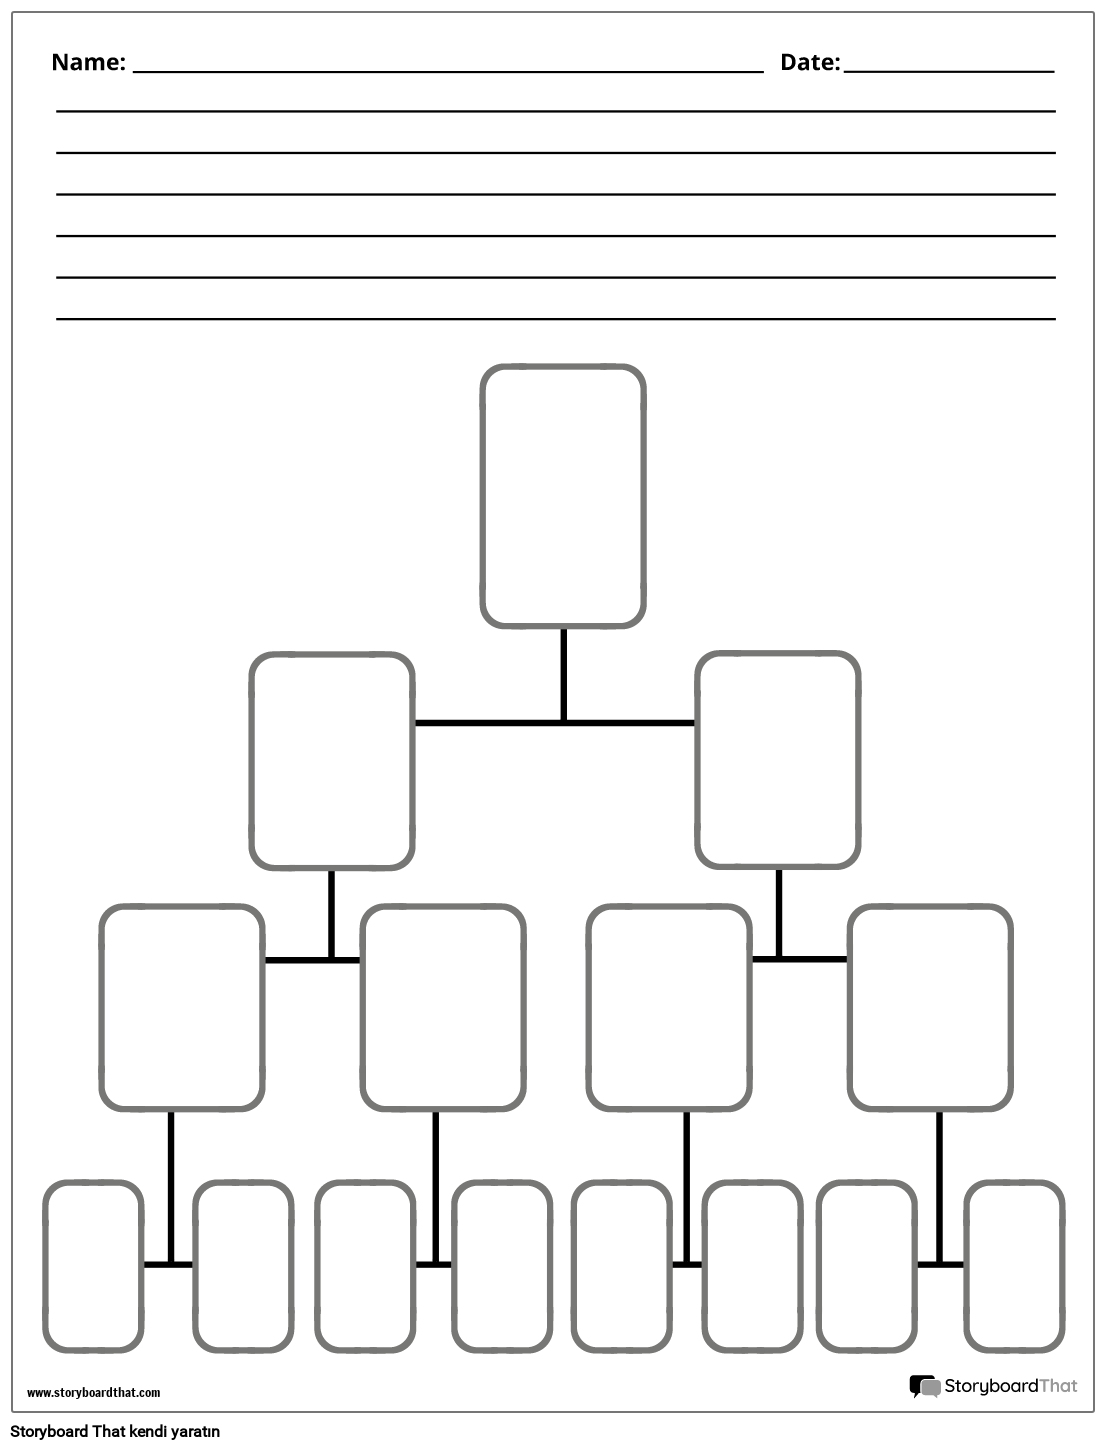 Yeni Oluştur Sayfa Ağacı Diyagramı Şablonu 4 (Siyah Beyaz)